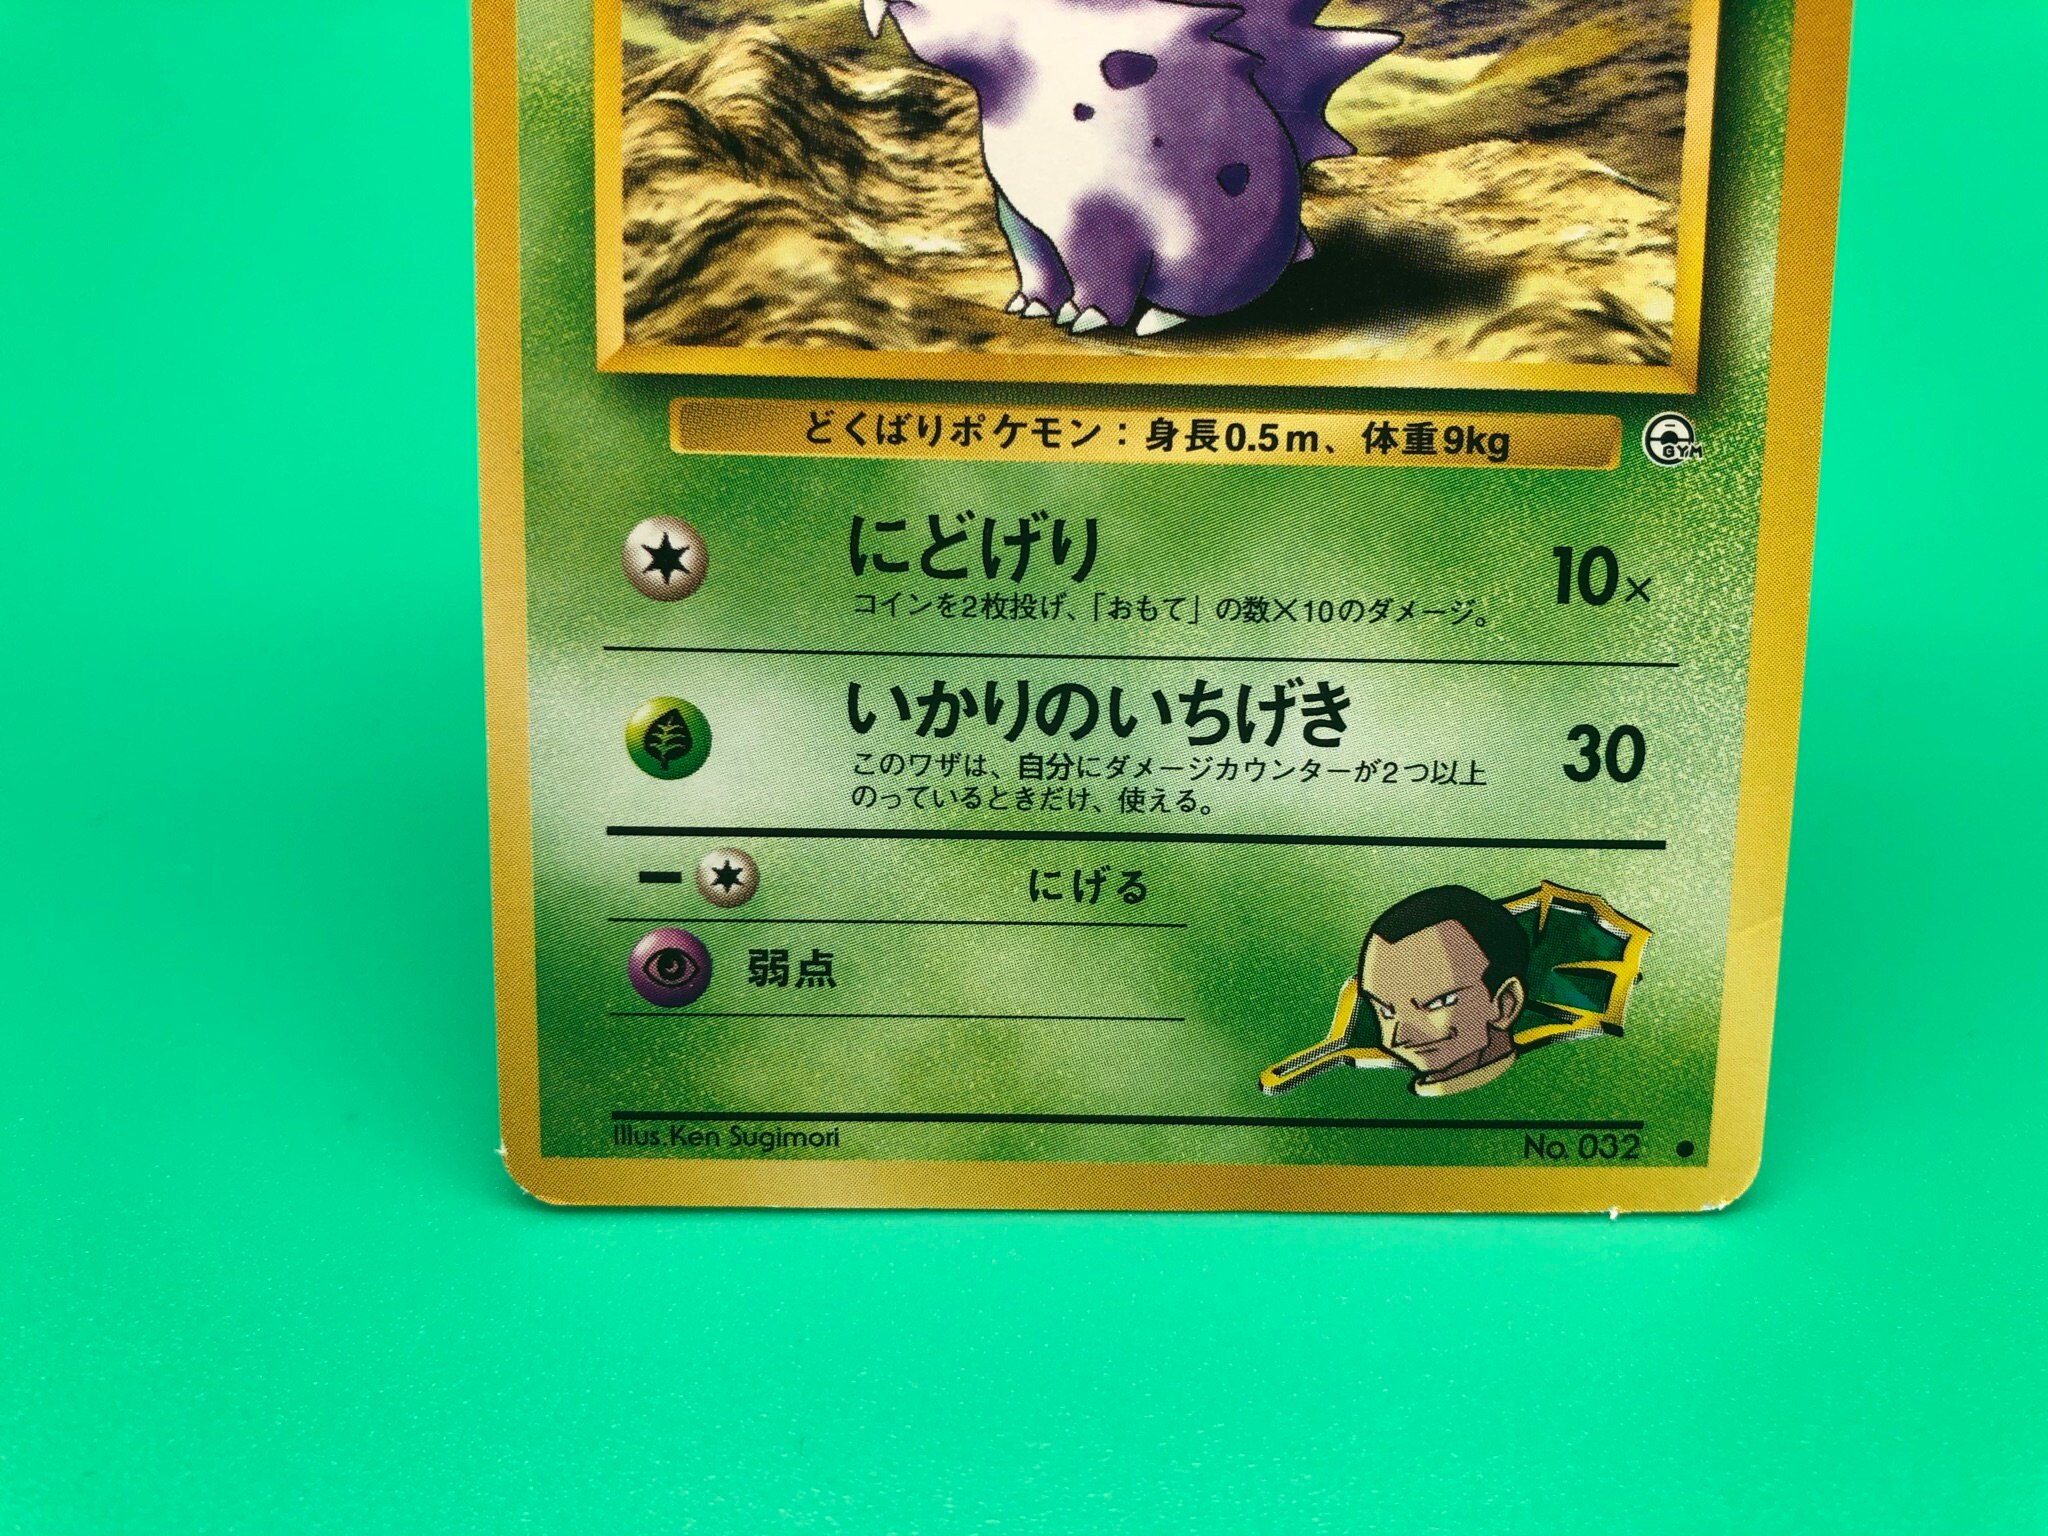 Giovanni S Nidoran Pokemon Card Japanese Rare Nintendo F S Etsy New Zealand